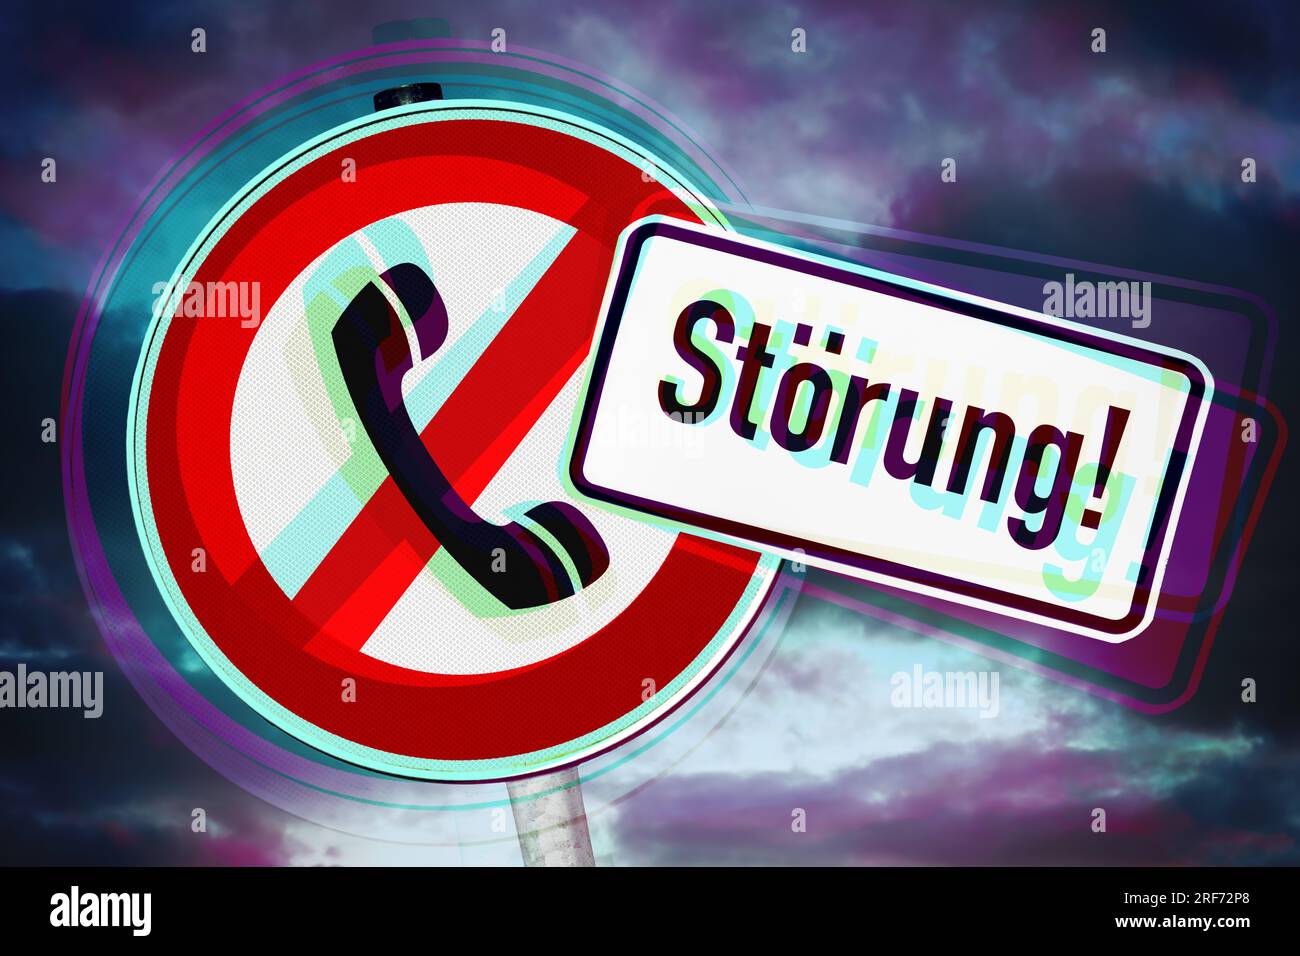 FotoMONTAGE, Schild mit durchgestrichenem Telefonhörer und Störung-Schild, Symbolfoto Telefonstörung Foto Stock